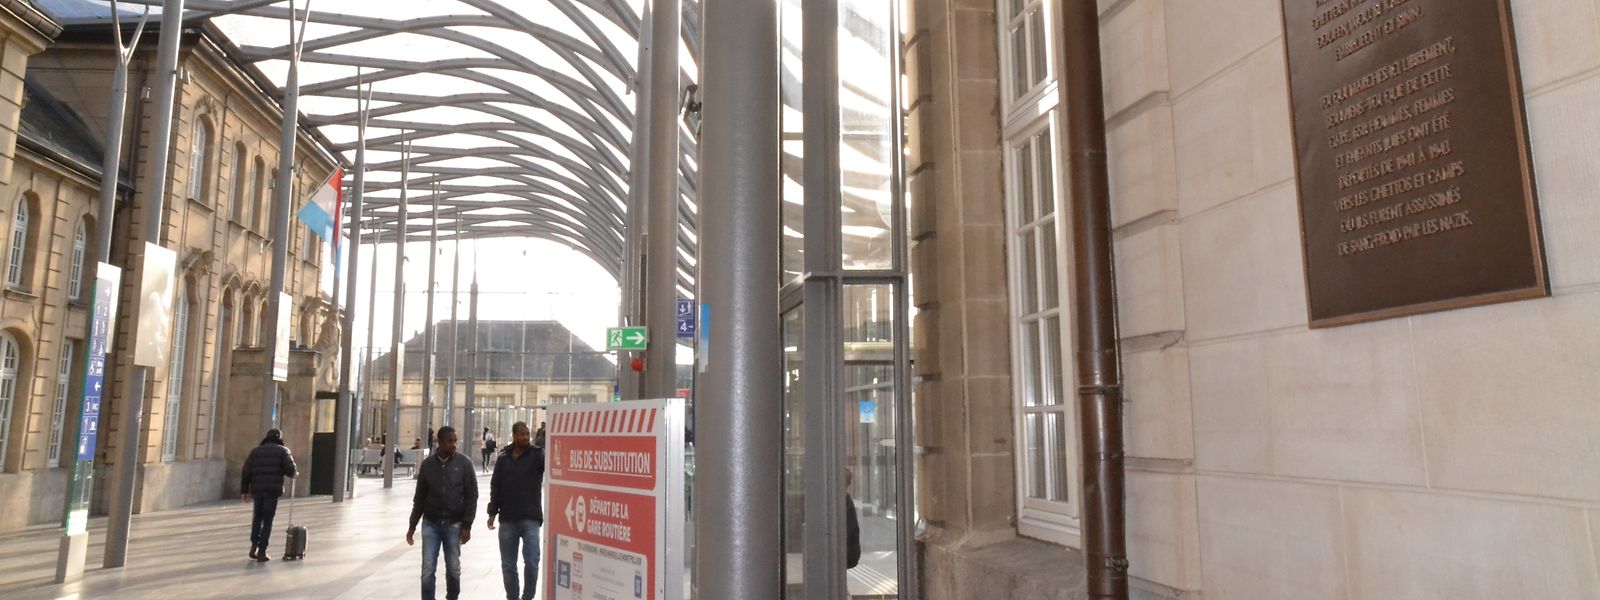 Am Hauptbahnhof, dort wo der Leidensweg der Juden begann, ist der Startpunkt des Wanderwegs. 